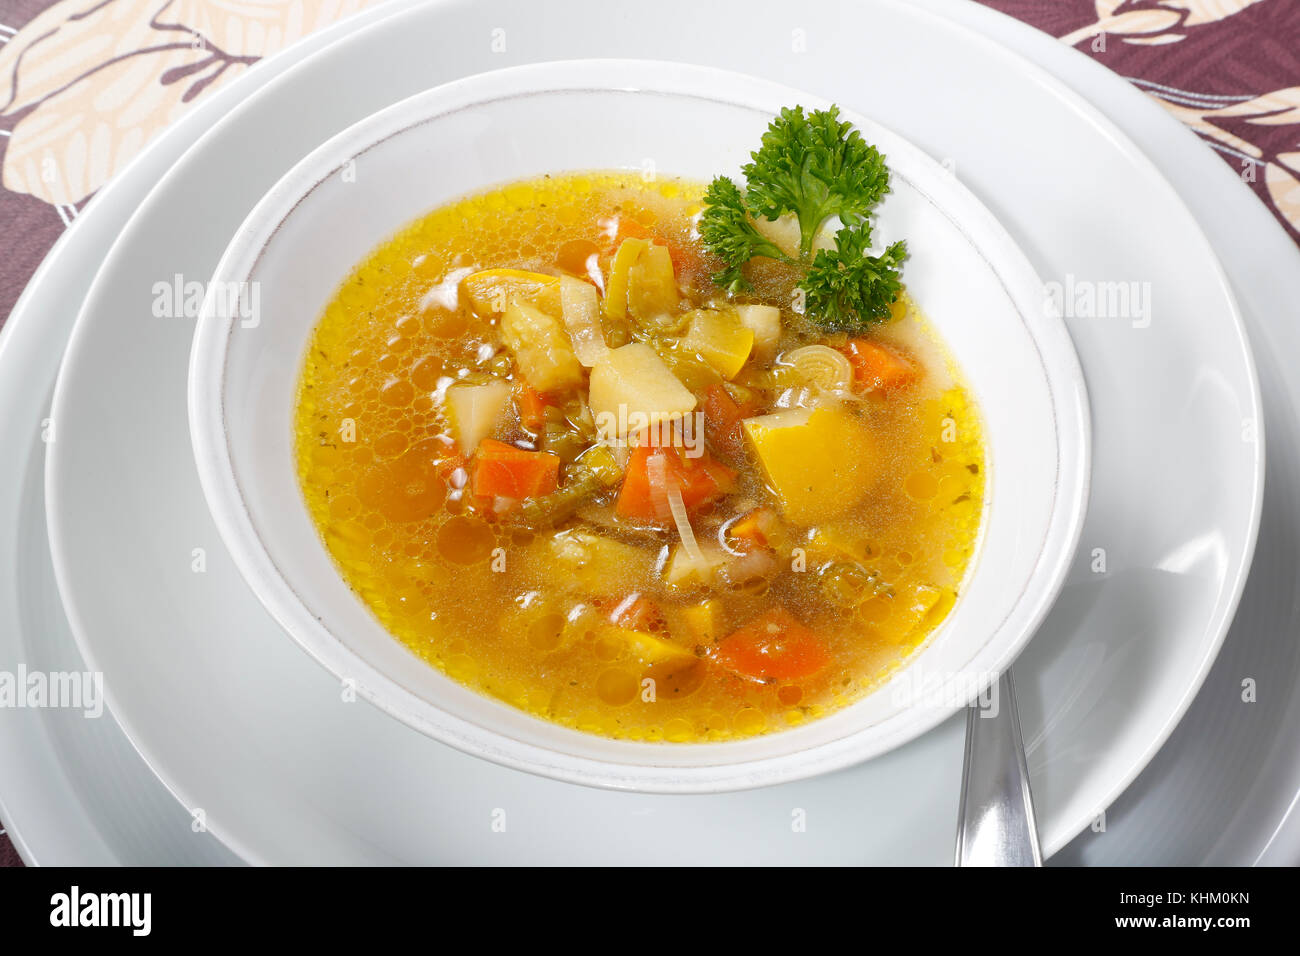 Piastra con minestra di verdura con il porro e zucchine, carote e prezzemolo Foto Stock